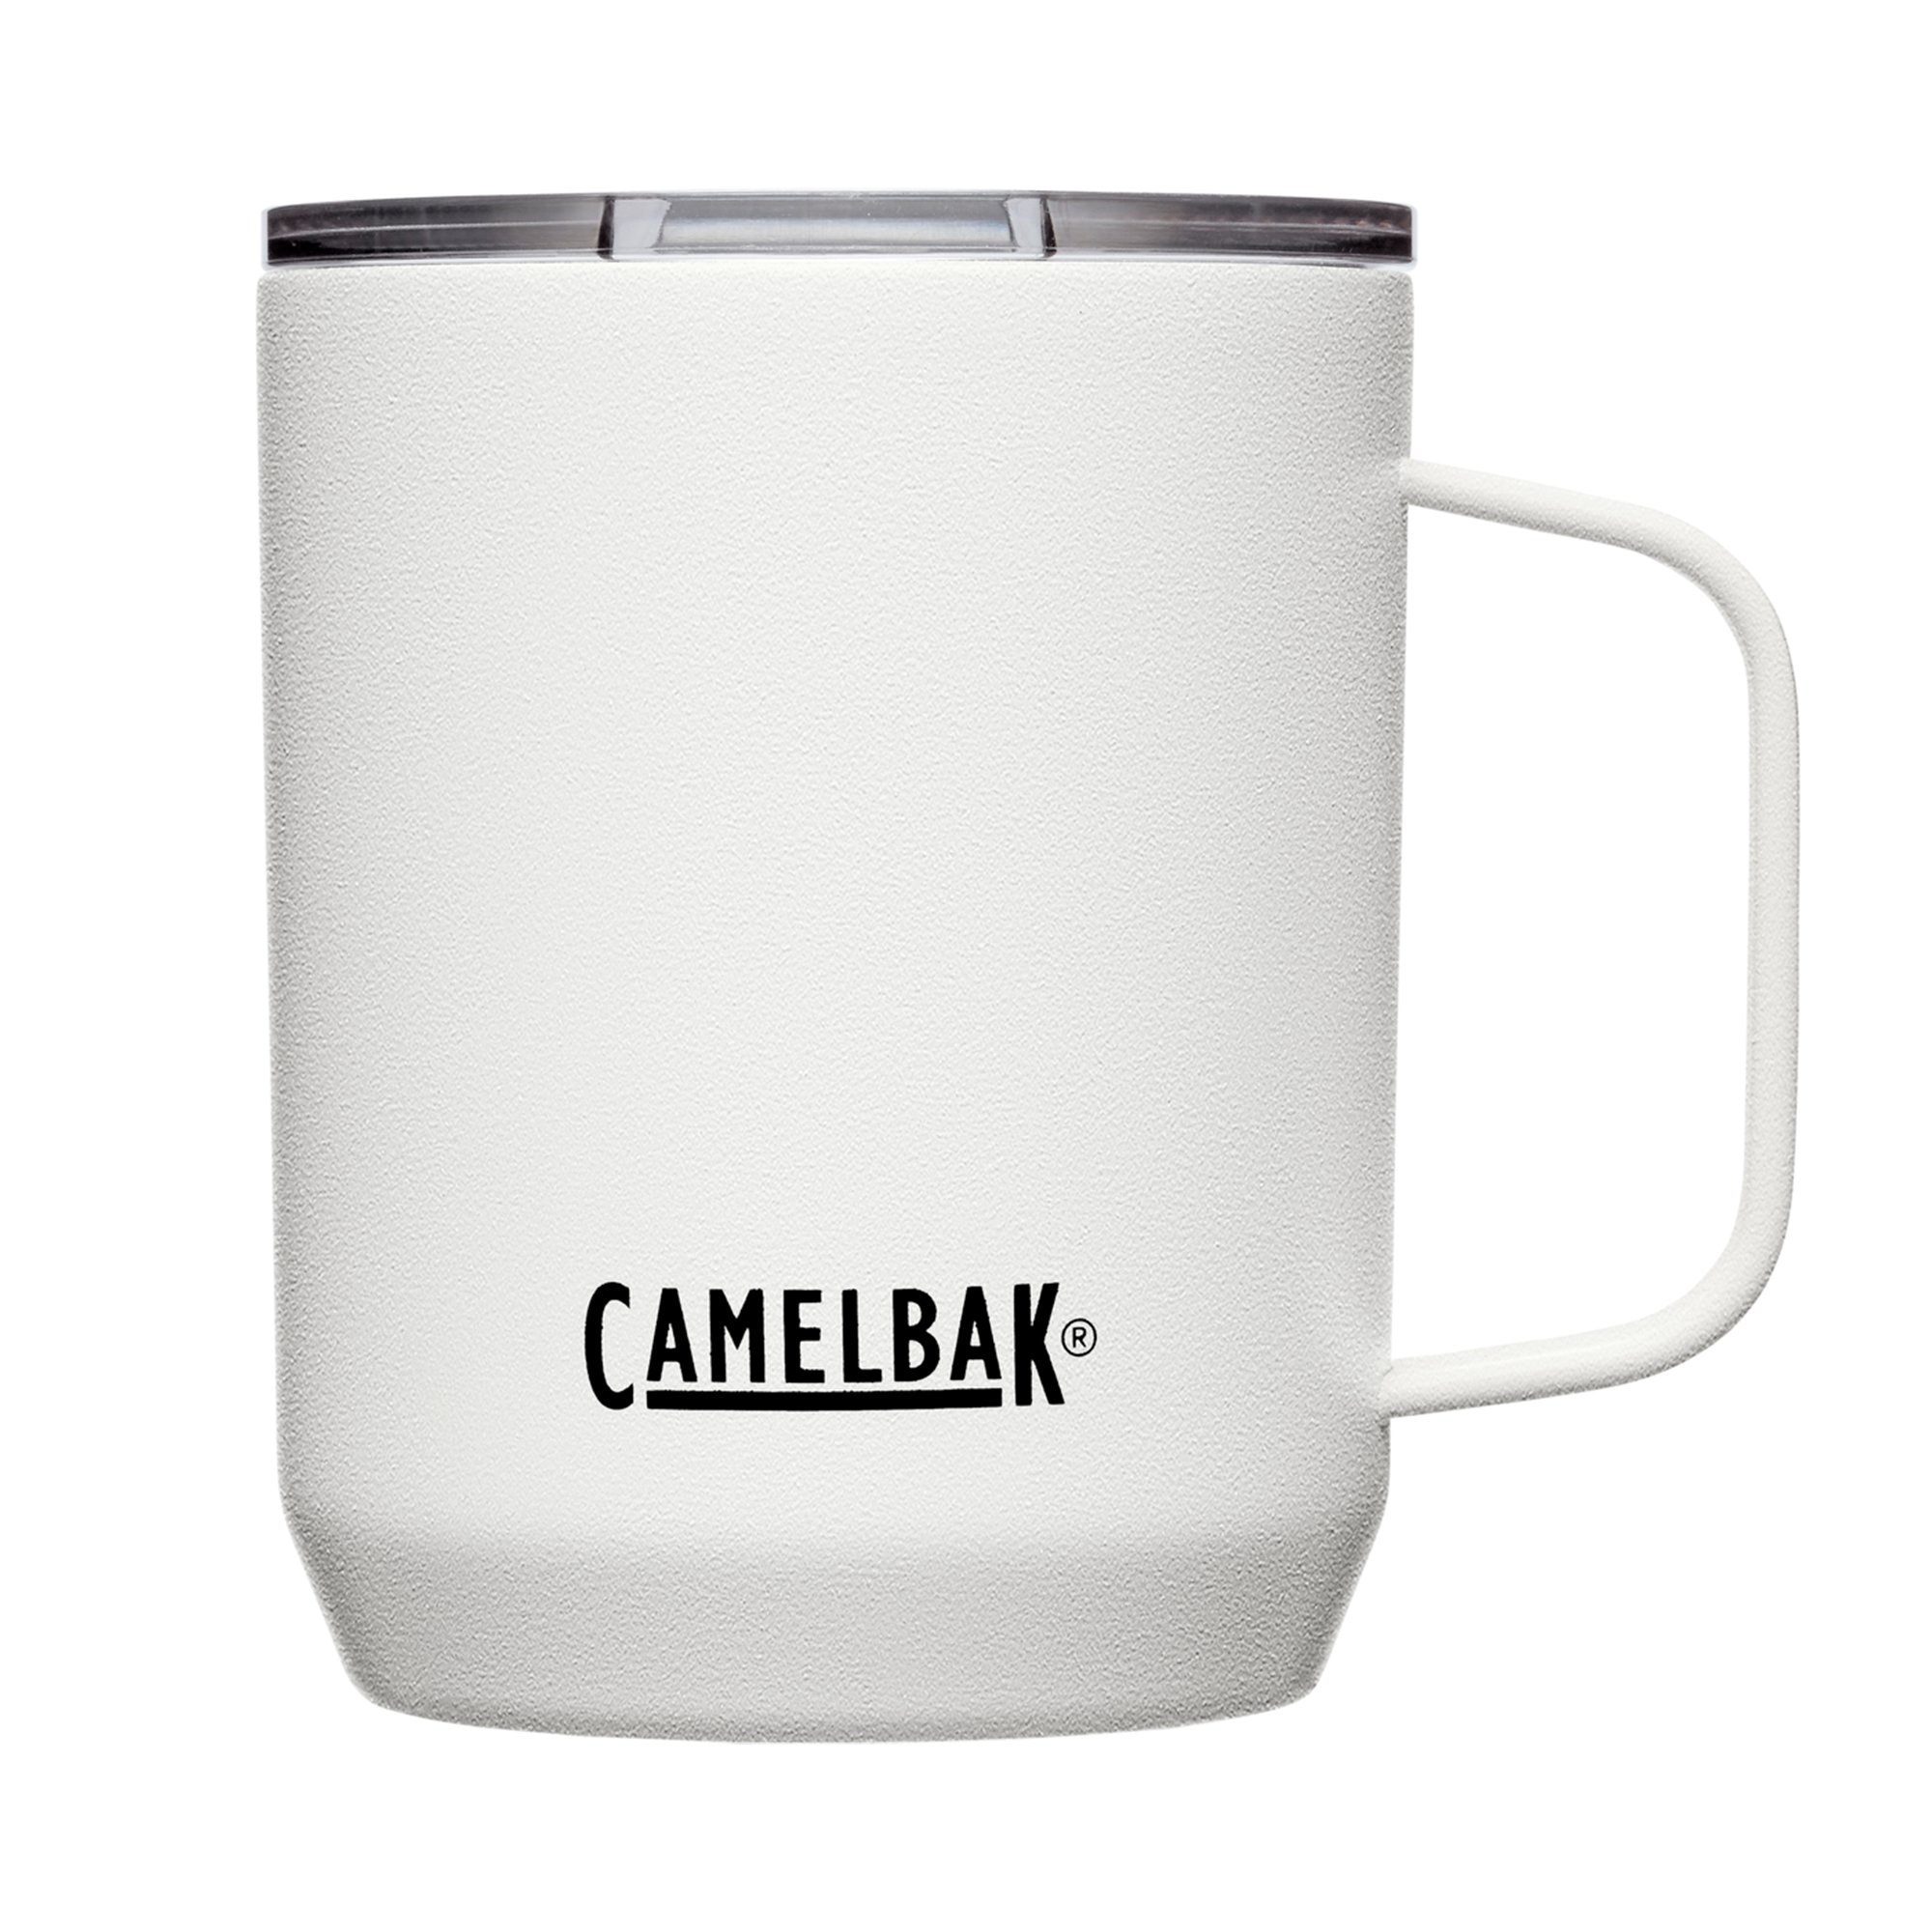 Camelbak Termokrus 0.35 liter, white Termokrus